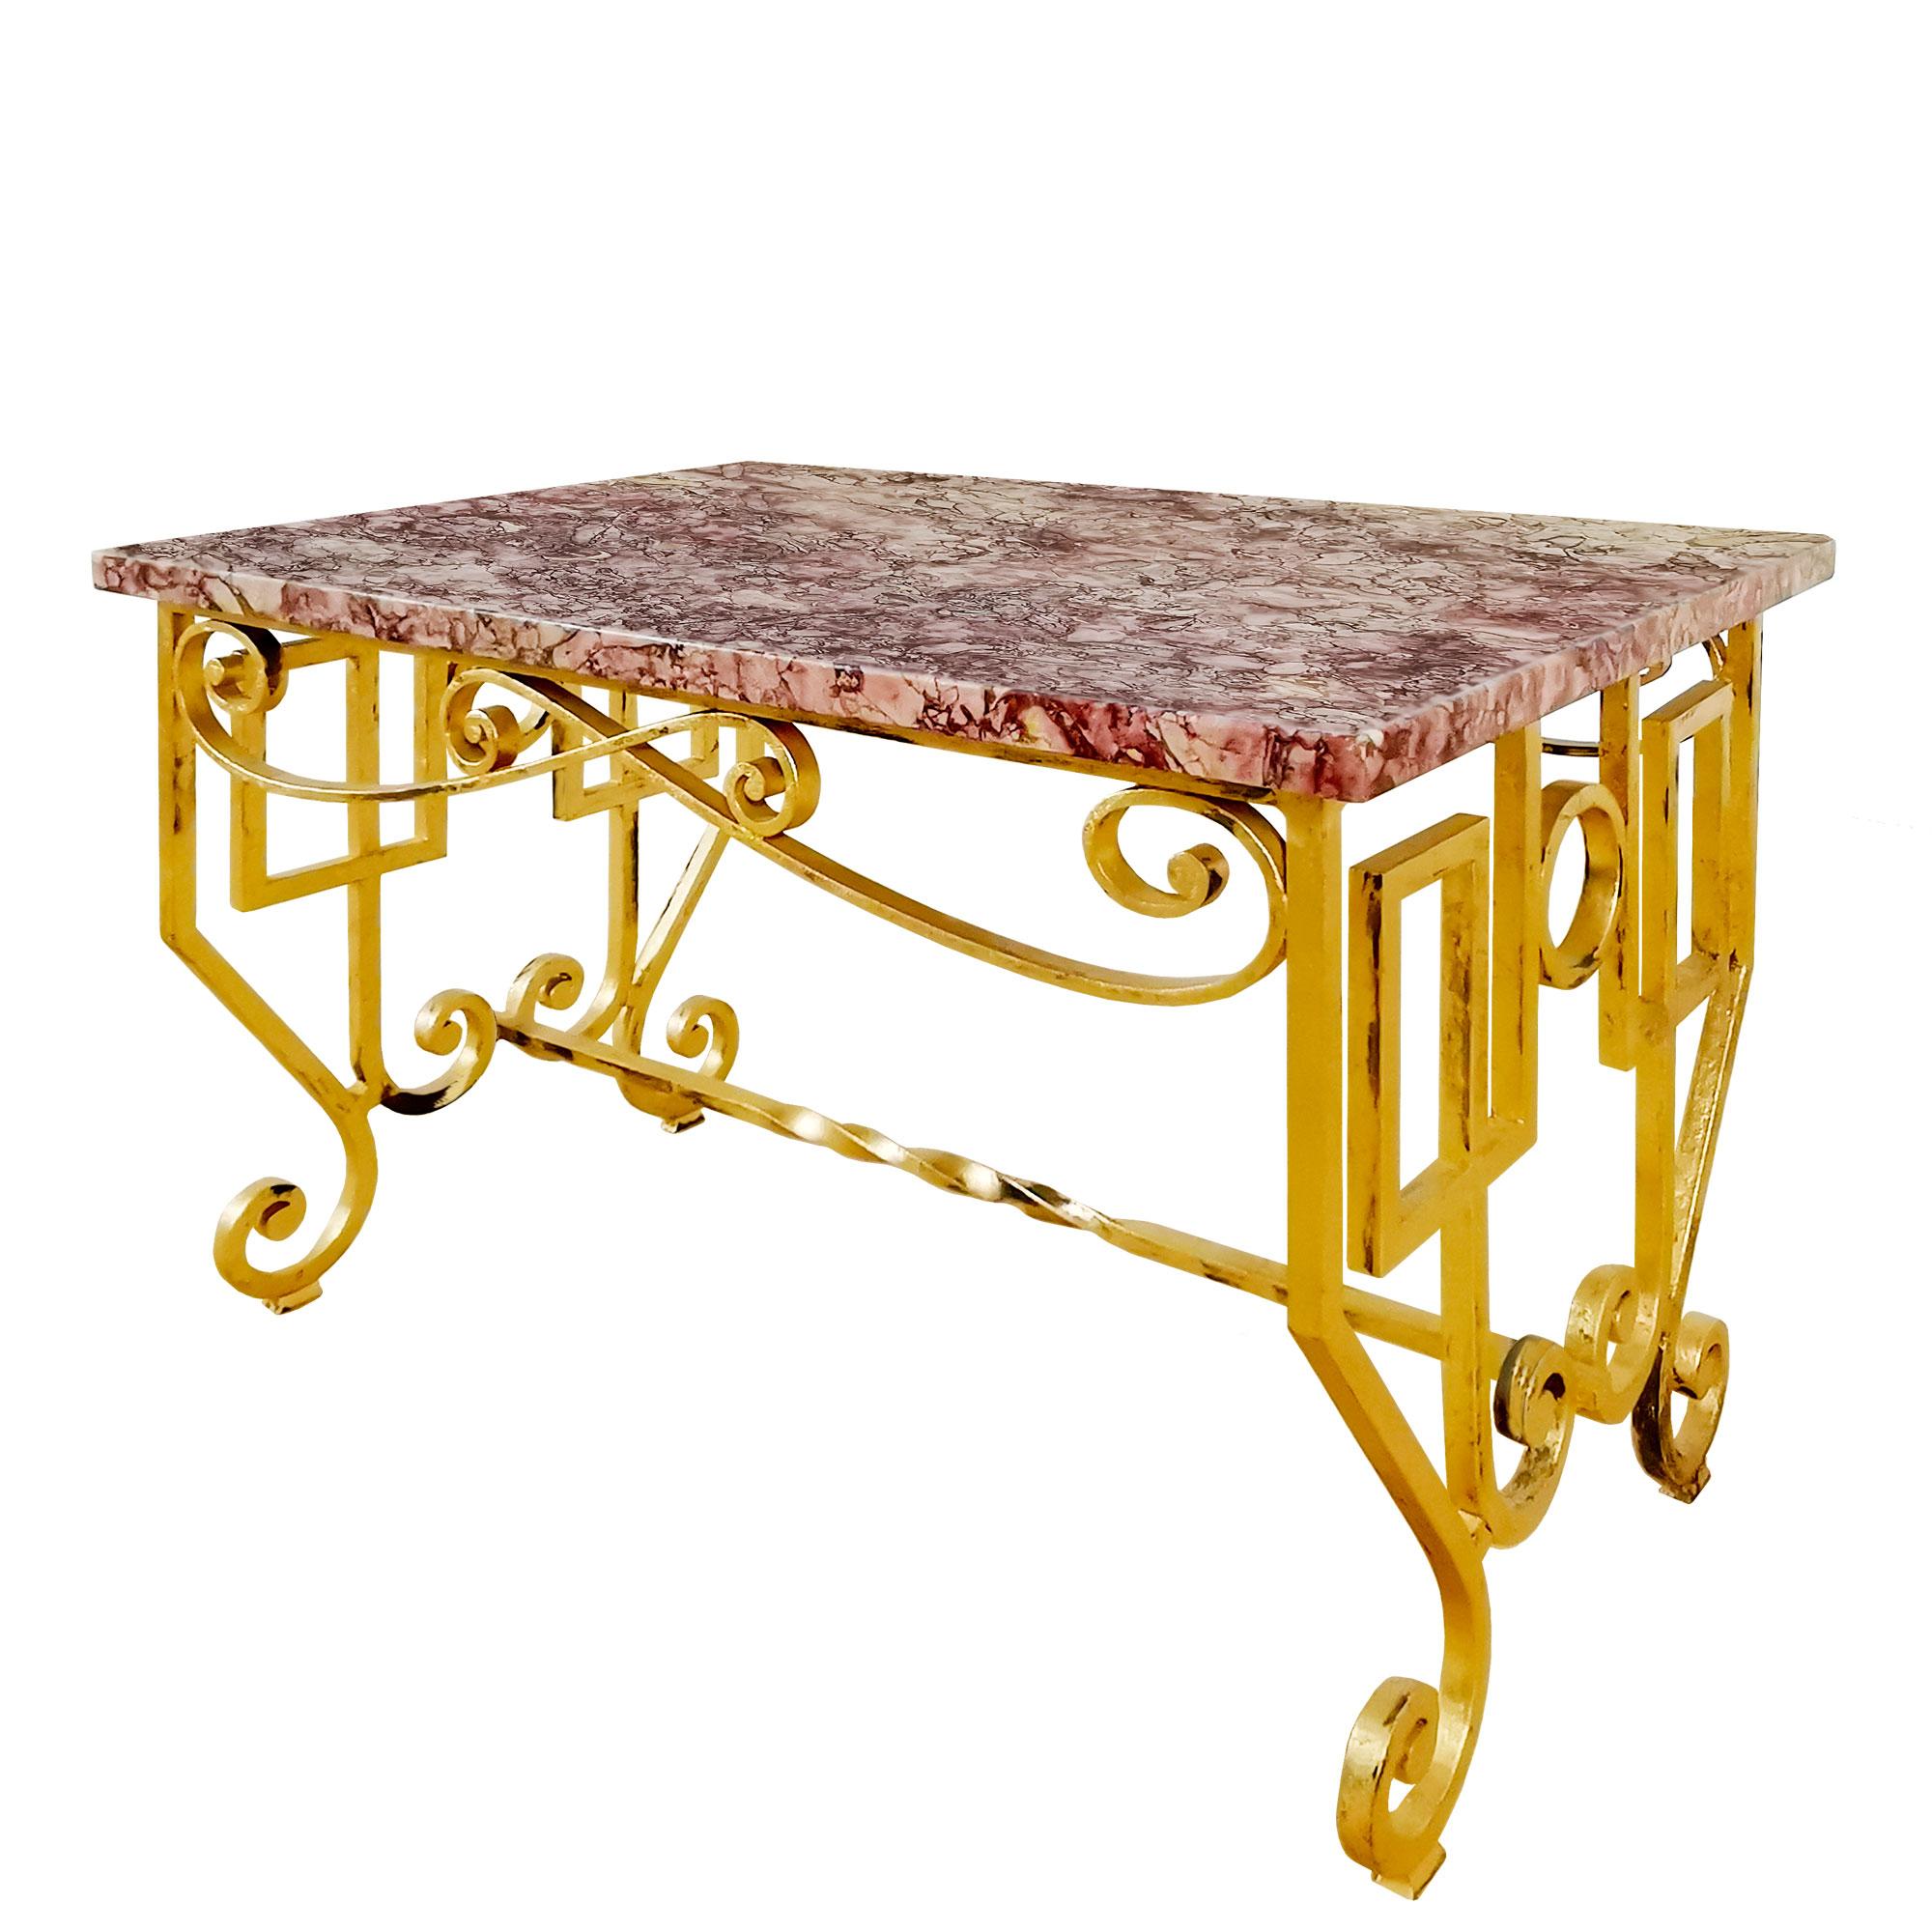 Table basse, en fer forgé doré à la feuille (un peu d'oxydation) avec un marbre rouge sur le dessus.

France c. C. 1940.